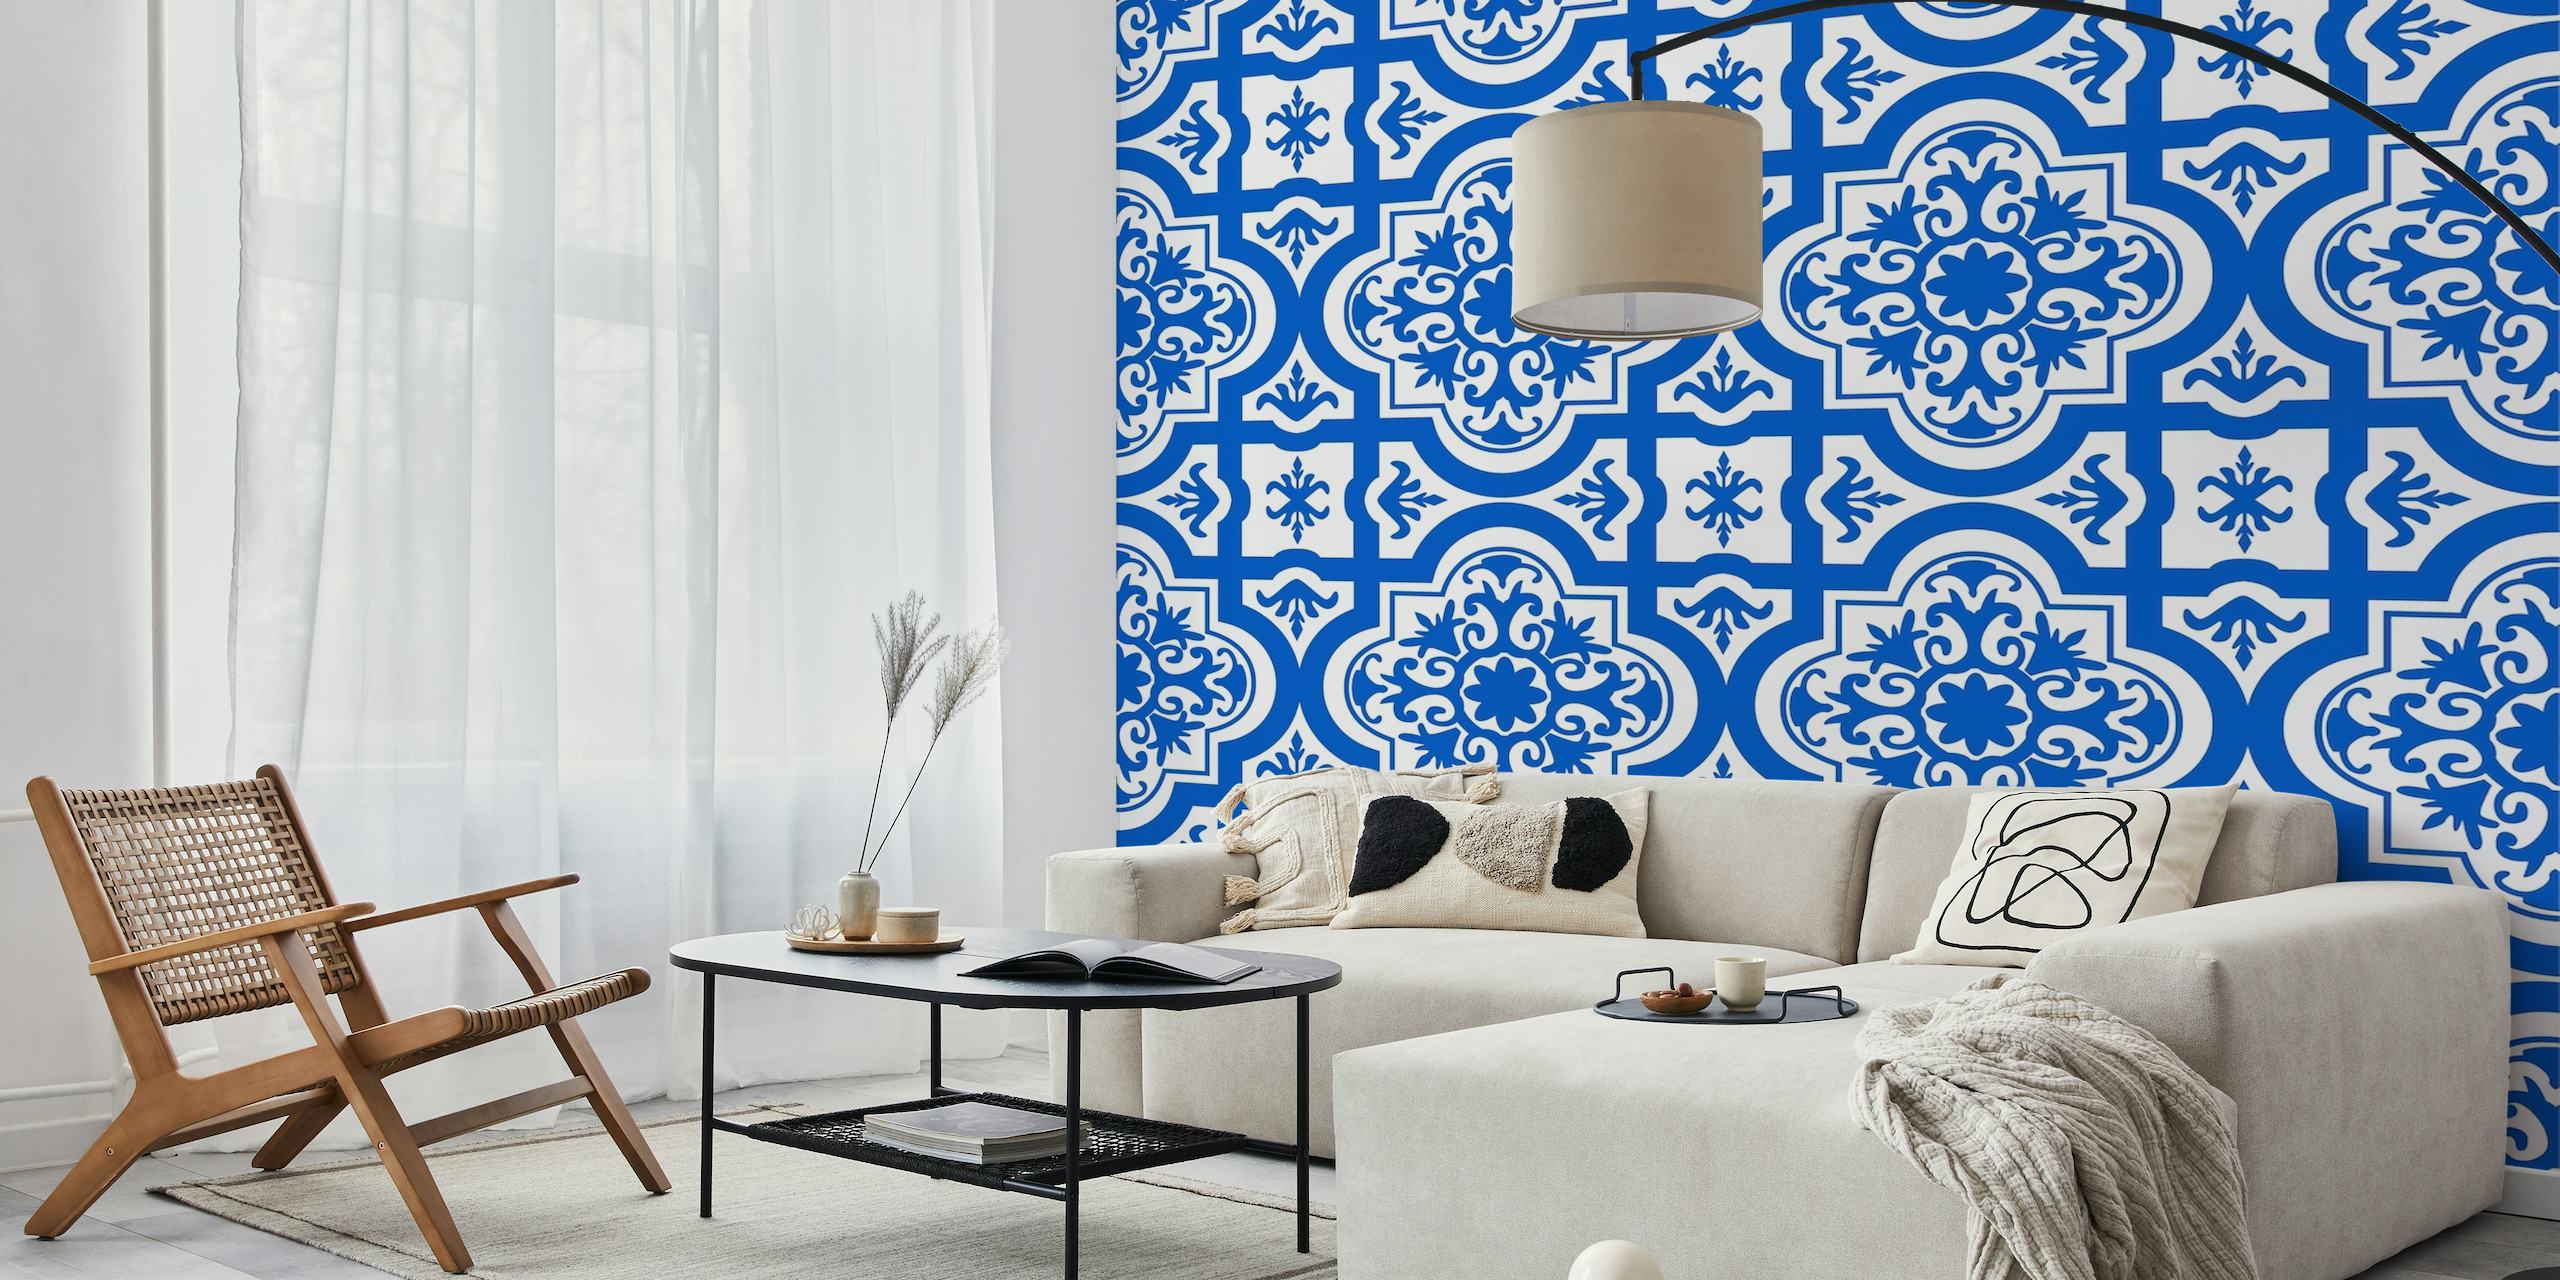 Spanish tile pattern azure blue white behang